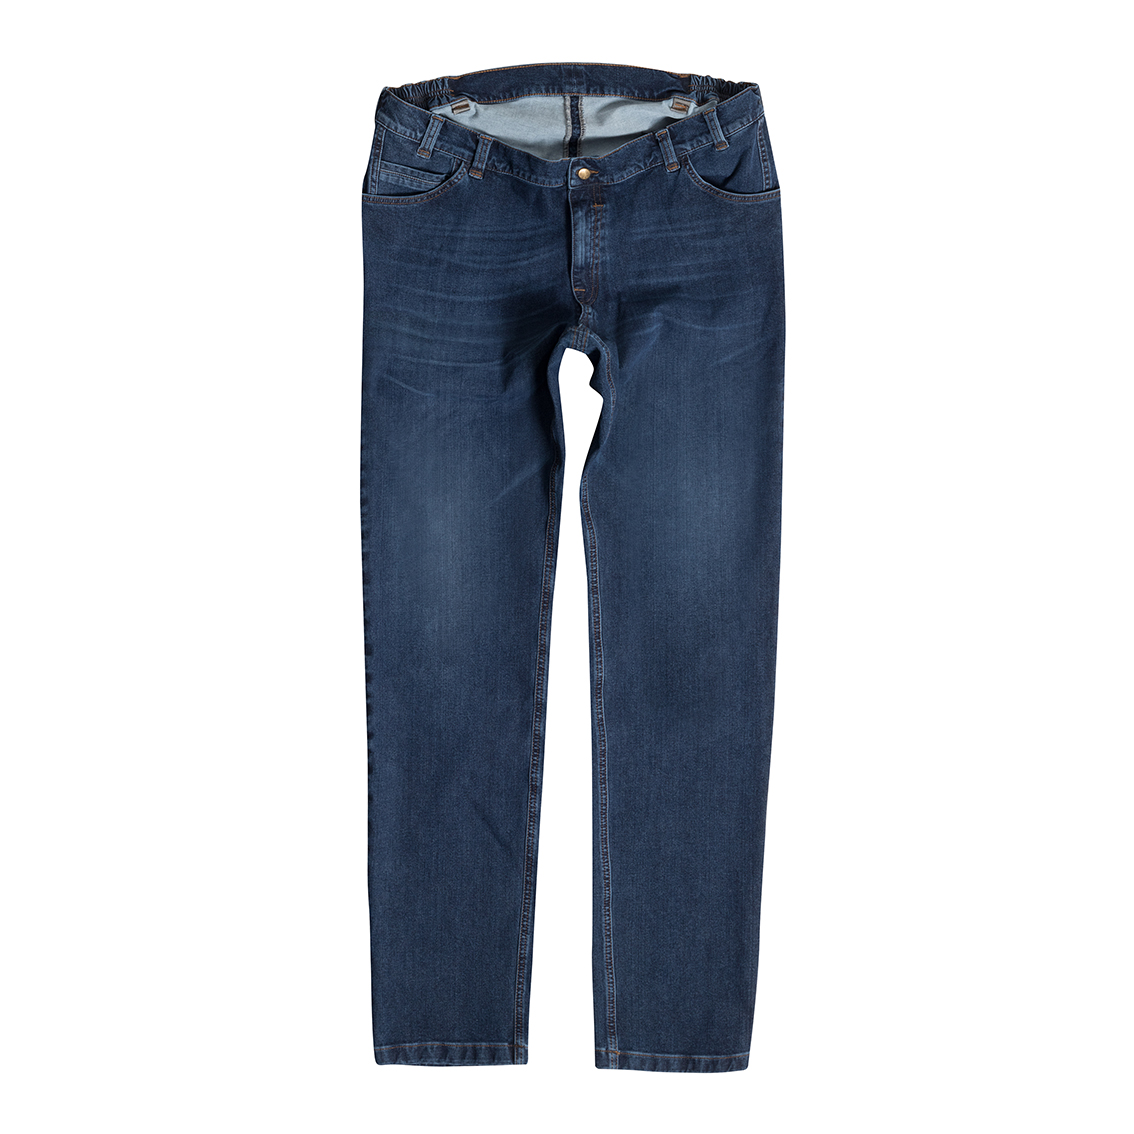 Men's Jeans Bi-Stretch, blue MIKE 10390 46